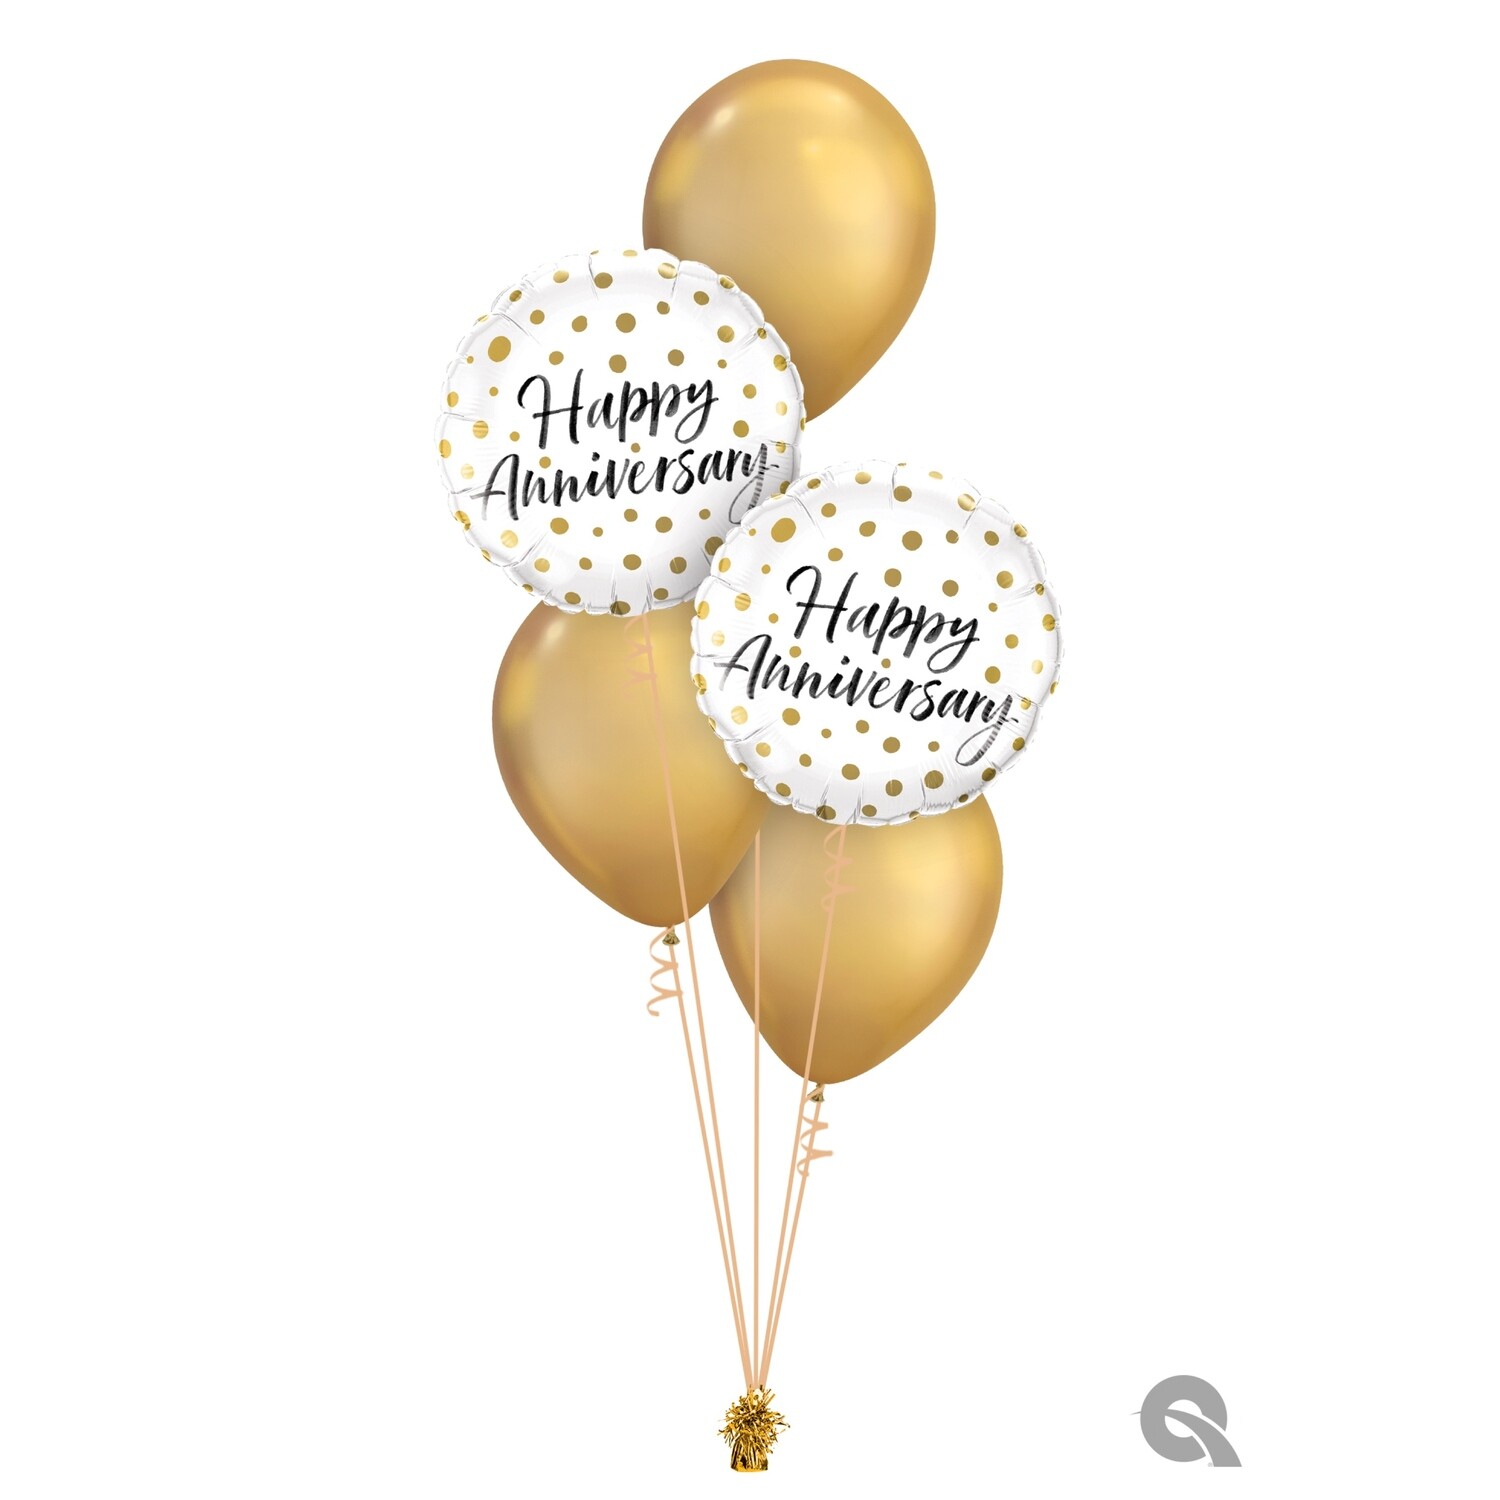 Happy Anniversary Balloon Bouquet Designs